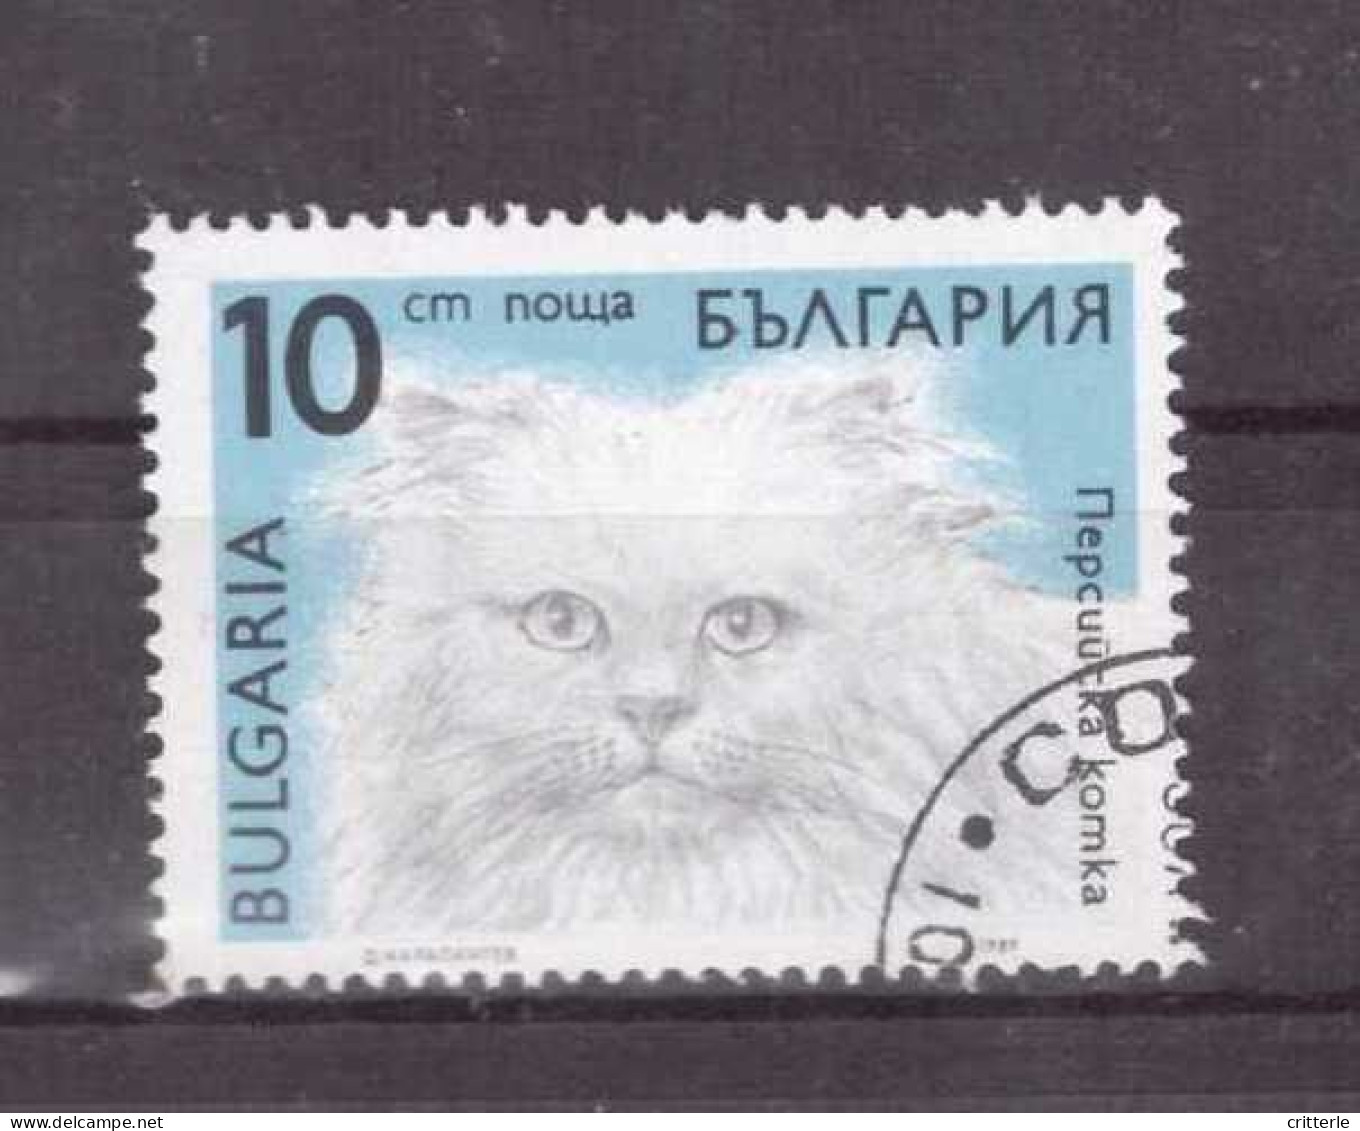 Bulgarien Michel Nr. 3812 Gestempelt (1,2,3) - Gebruikt